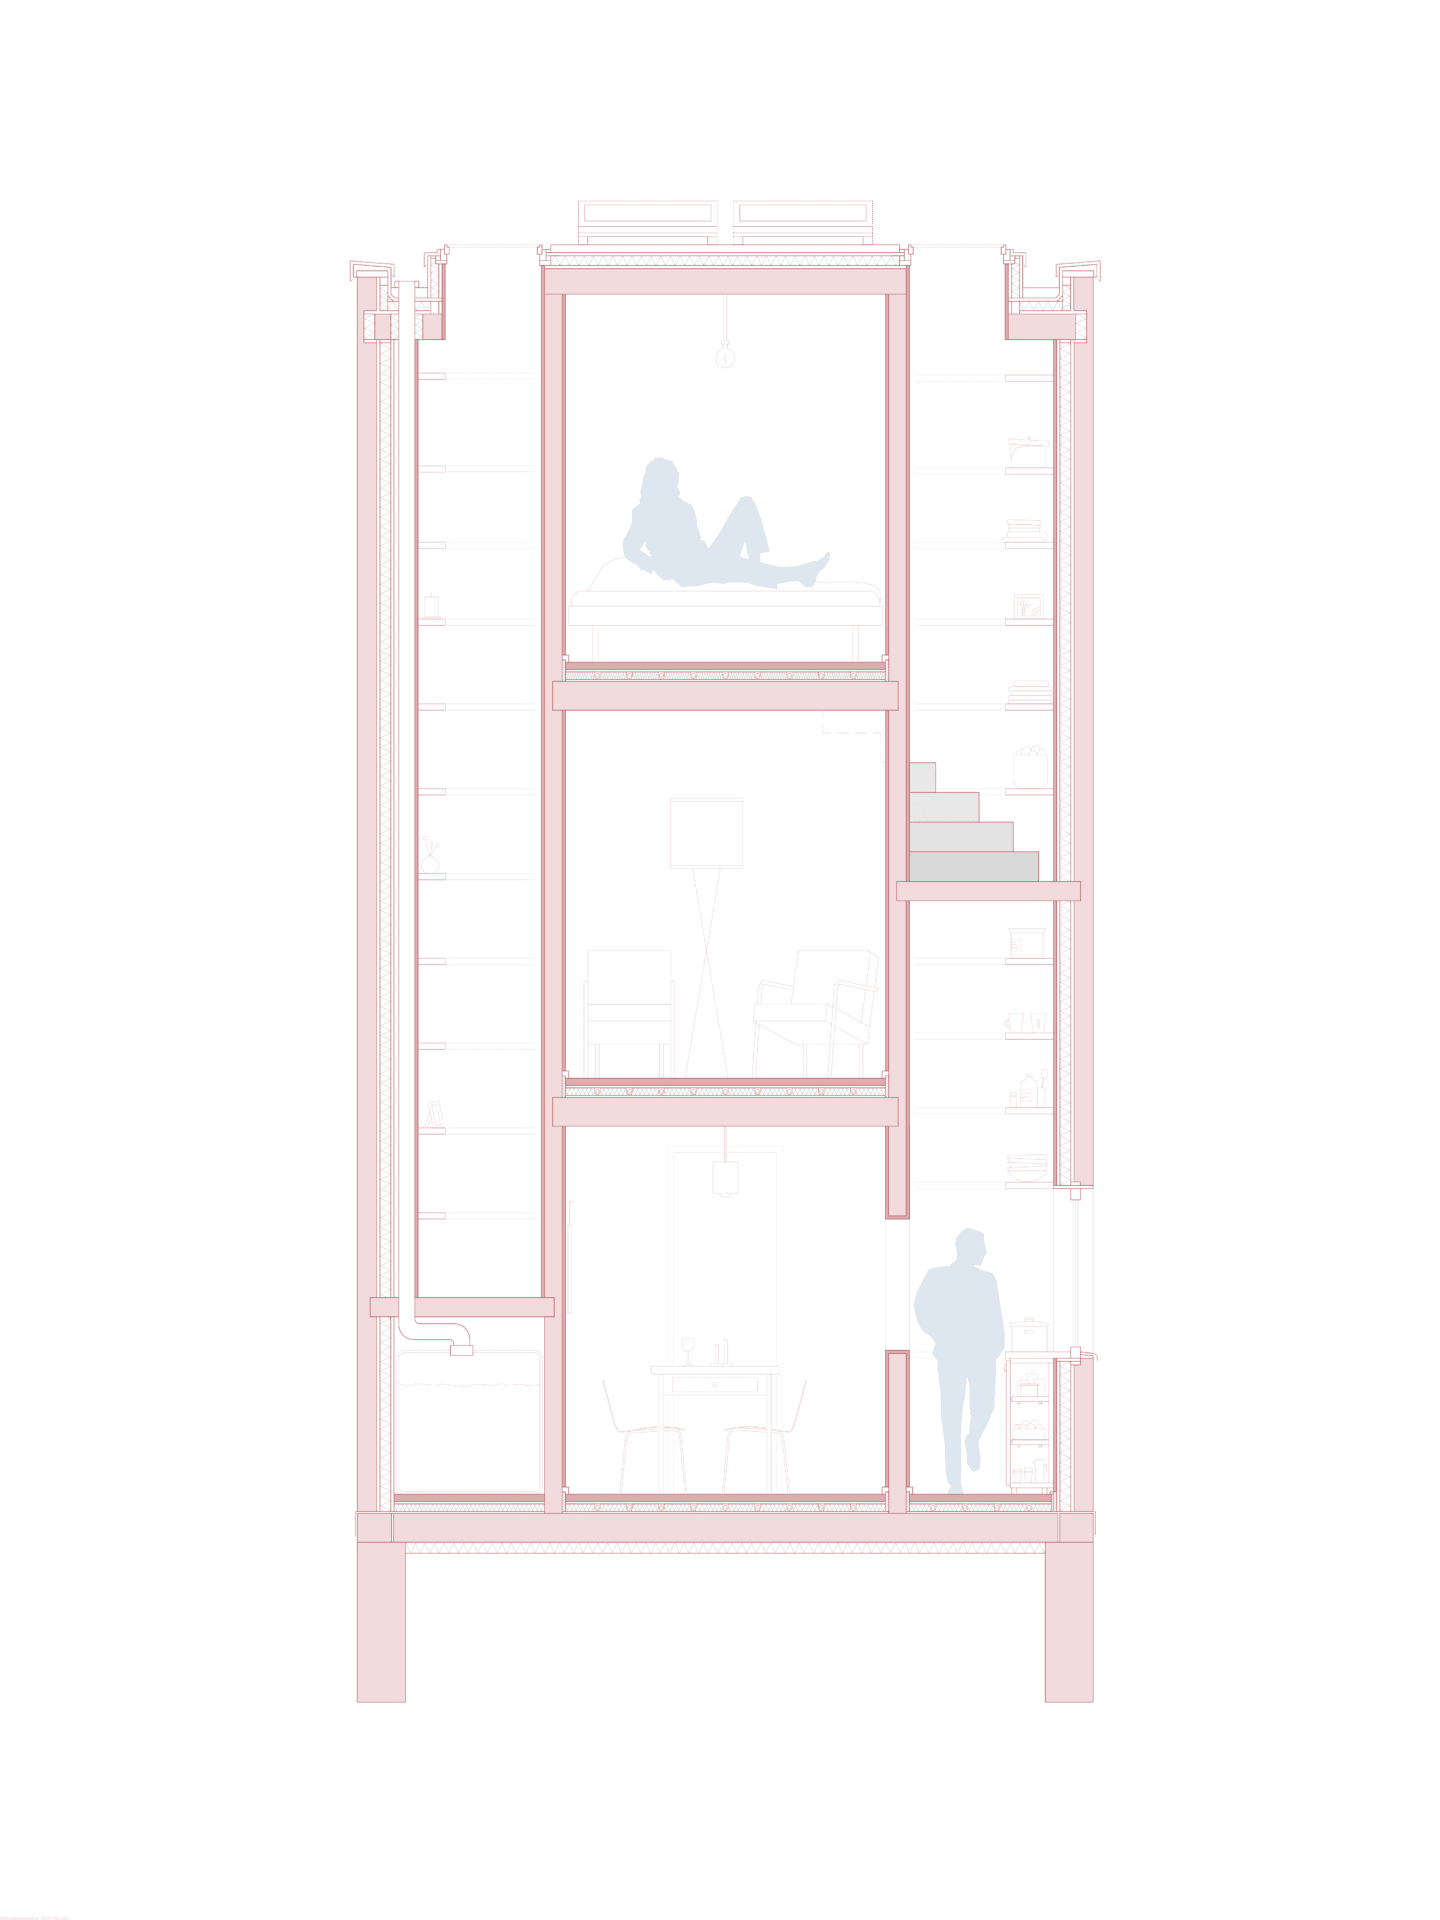 Grafische Darstellung des Schnittes durch eine Mirco Home Baukörper